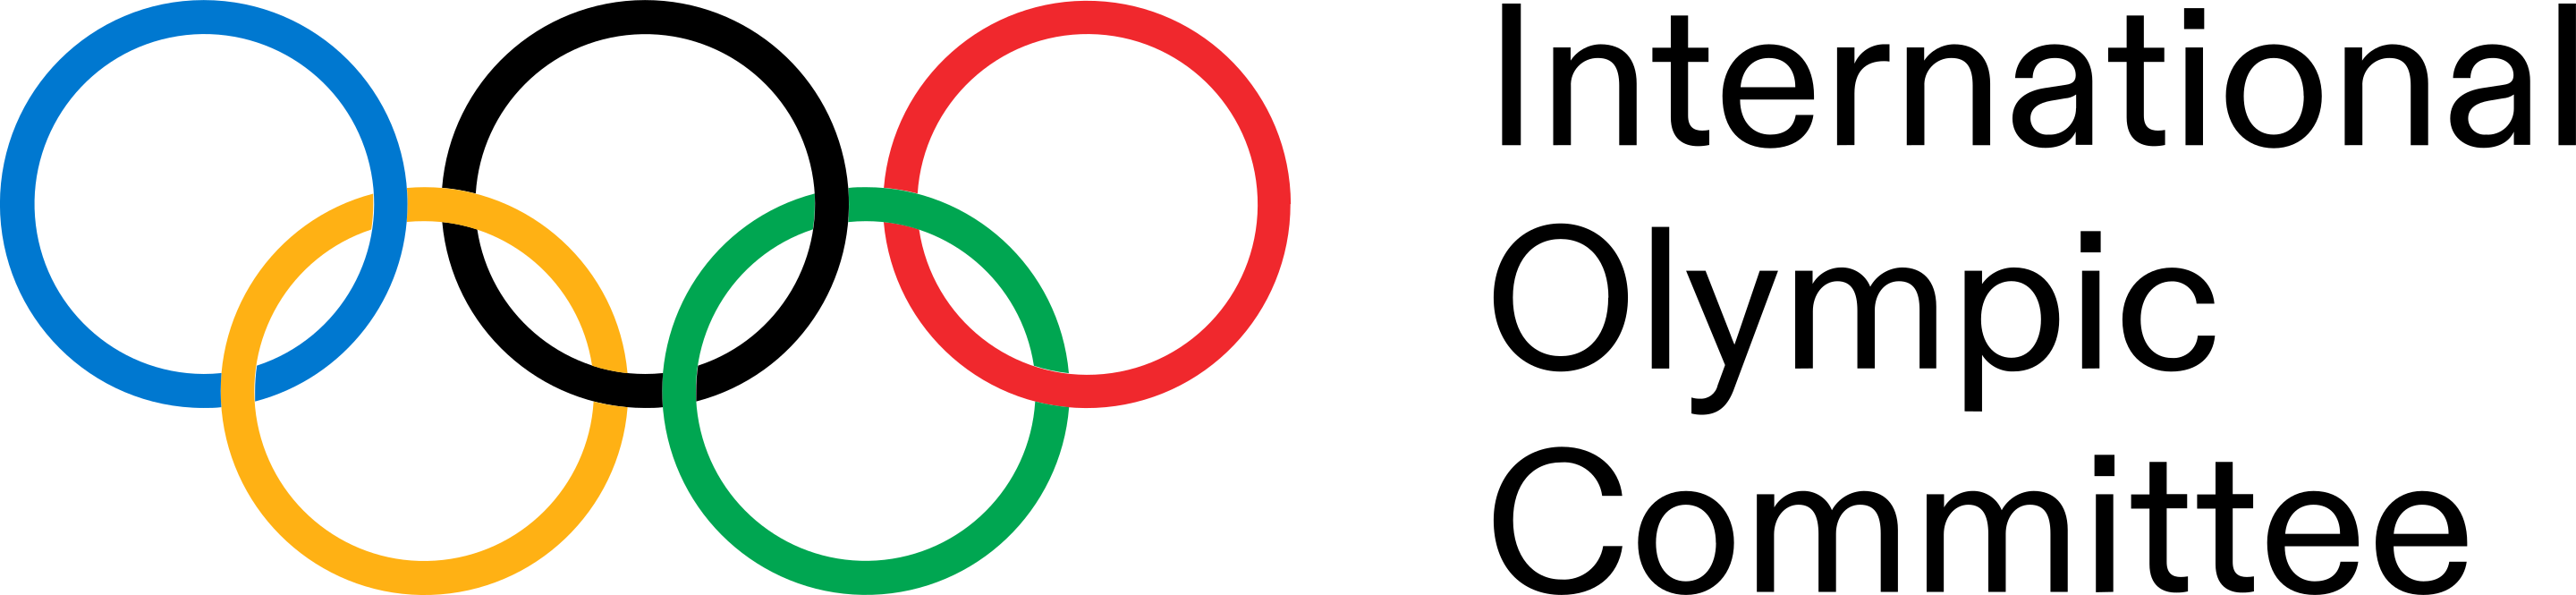 МОК - Международный олимпийский комитет - Comité international olympique - International Olympic Committee